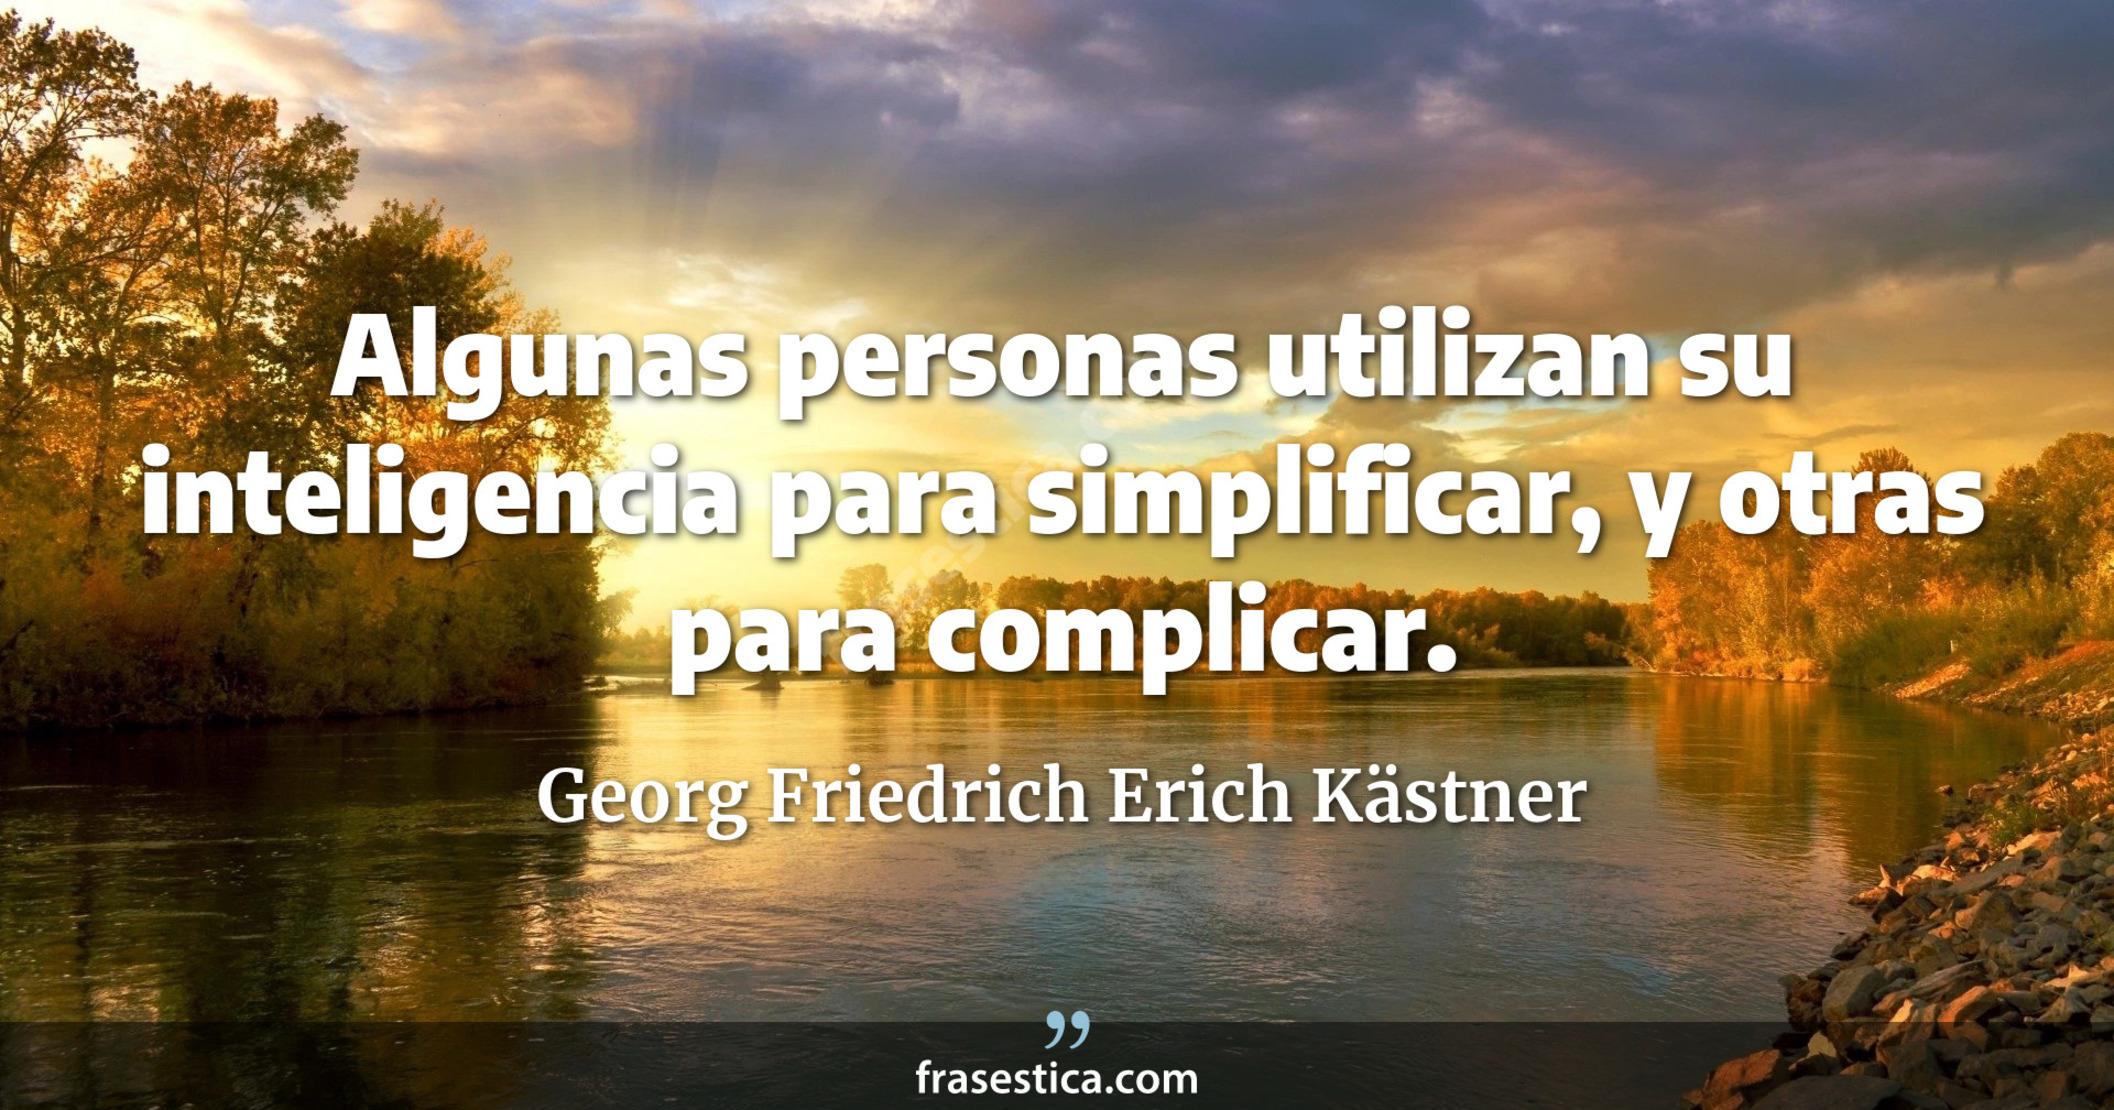 Algunas personas utilizan su inteligencia para simplificar, y otras para complicar. - Georg Friedrich Erich Kästner